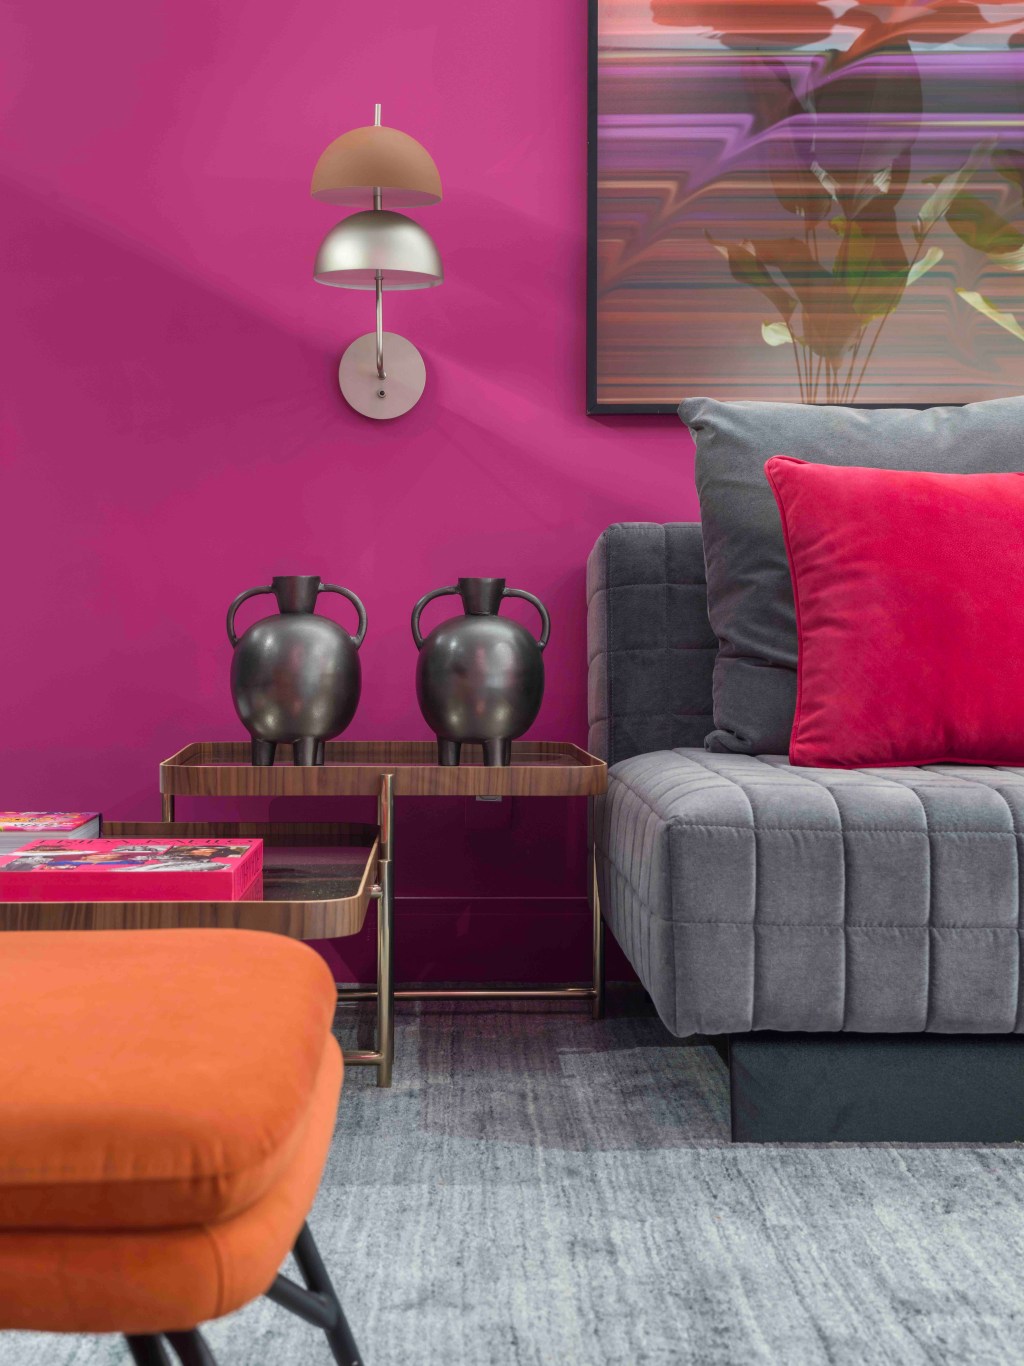 Brunete Fraccaroli Arquitetura & Interiores - O Reverso do Metaverso. Projeto da CASACOR São Paulo 2023. Na foto, sala com parede rosa, sofá cinza e obras de arte.